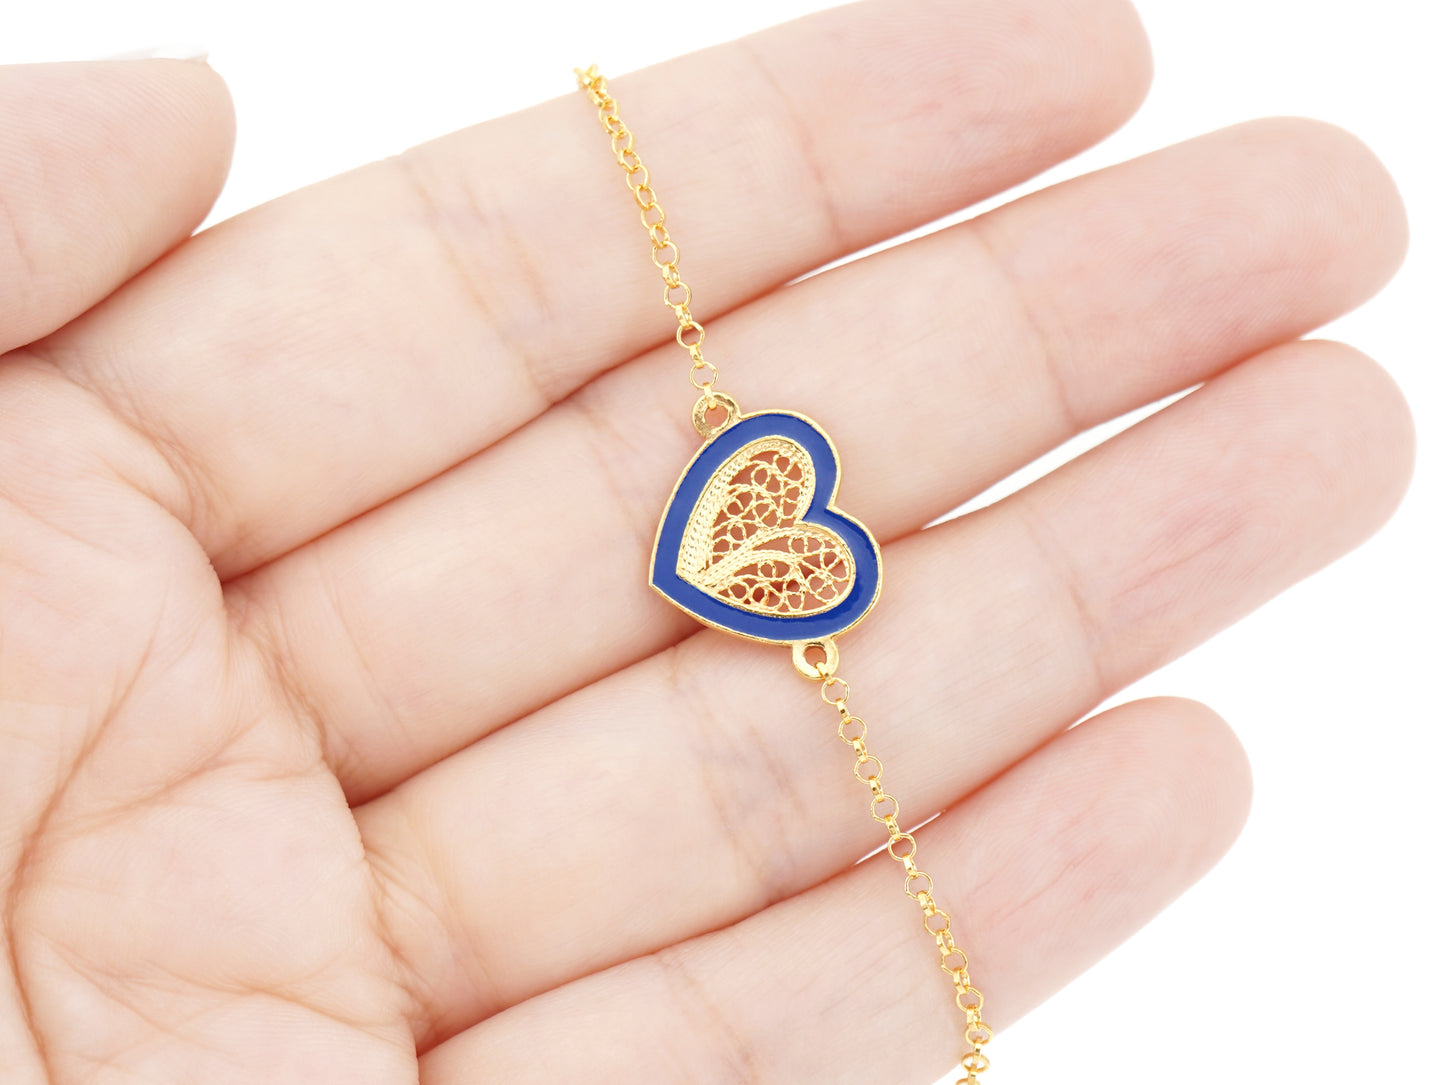 Pulseira Coração Médio Esmalte Azul, Filigrana Portuguesa, Prata de Lei 925 Dourada - Pormenor na mão